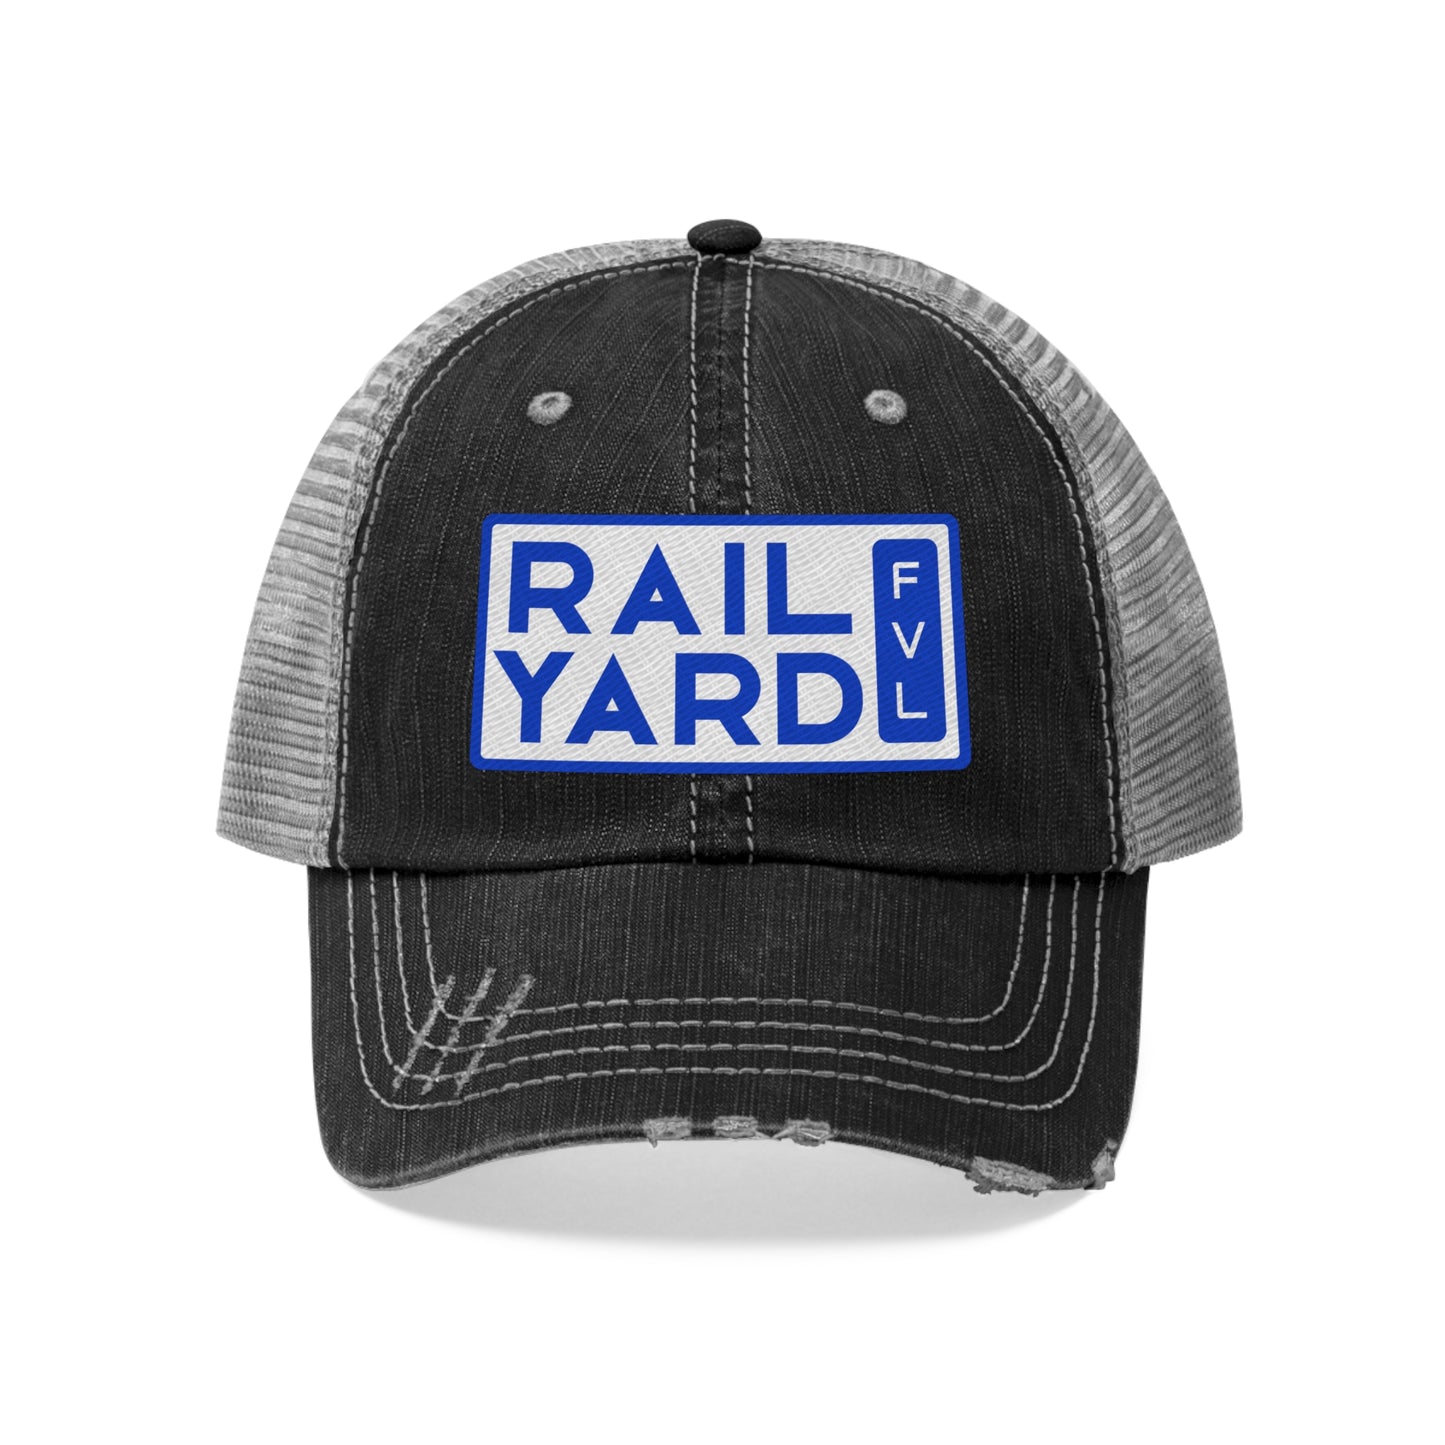 Railyard FVL - Unisex Trucker Hat